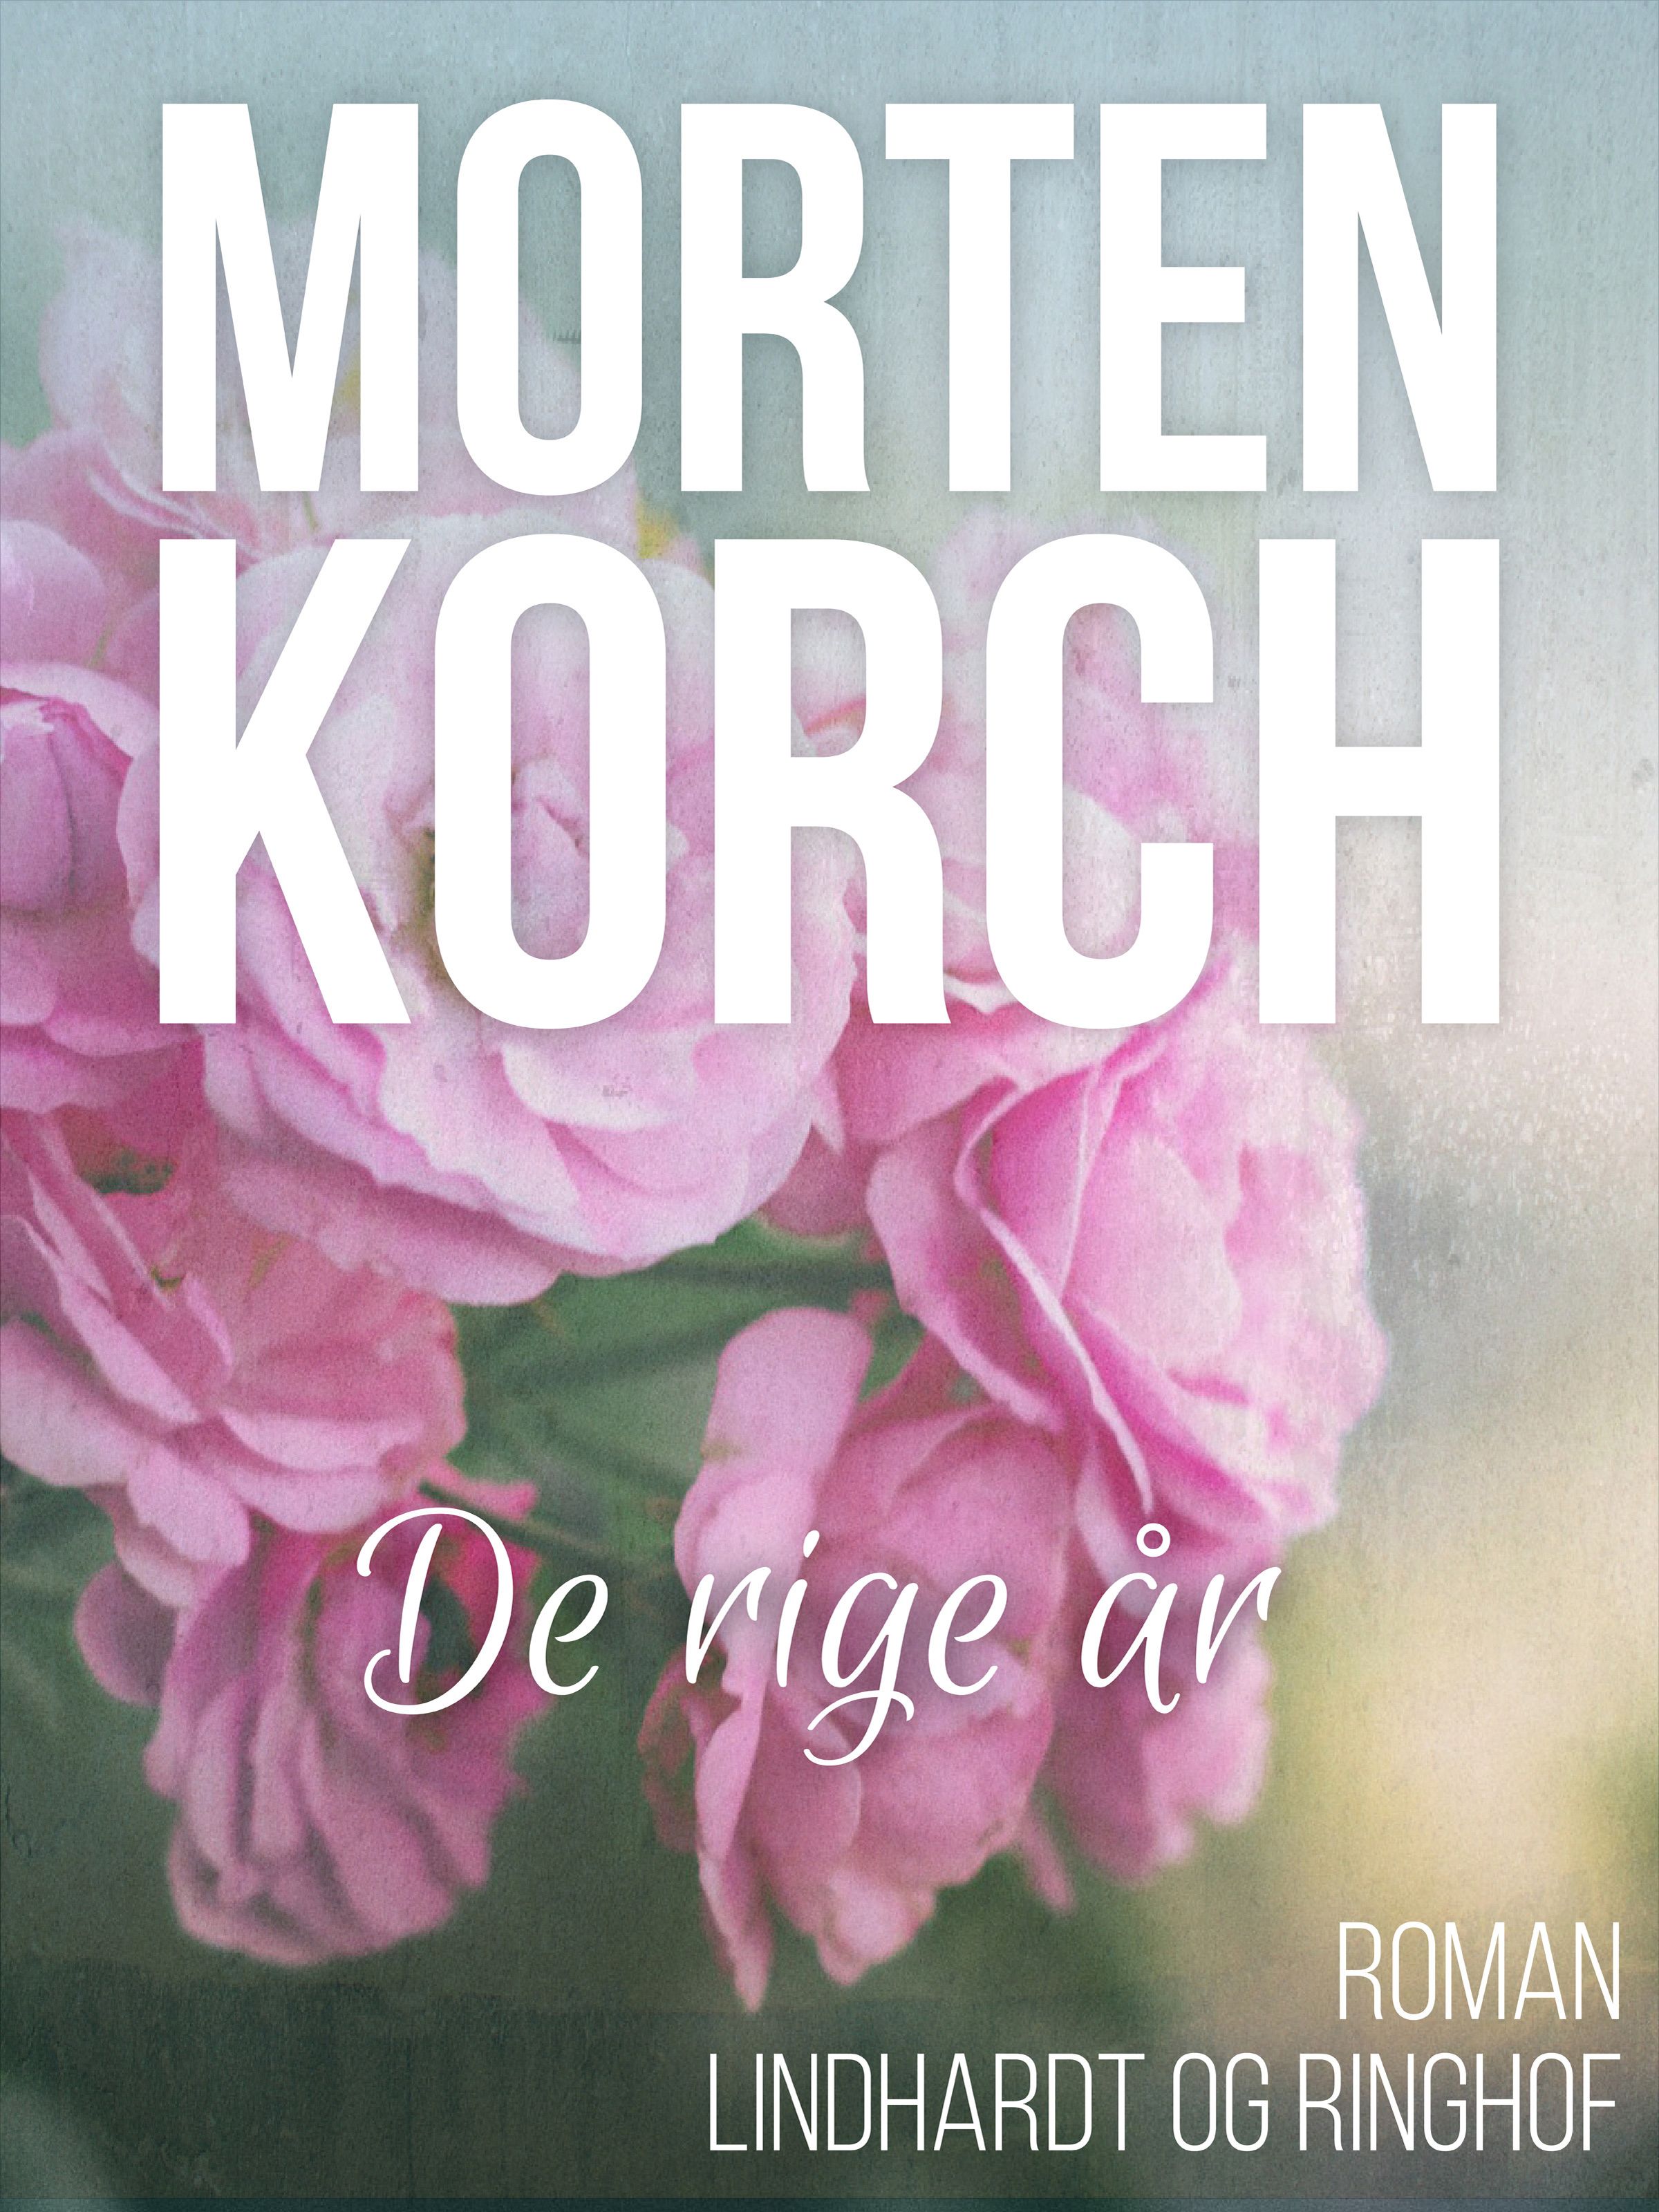 De rige år, eBook by Morten Korch